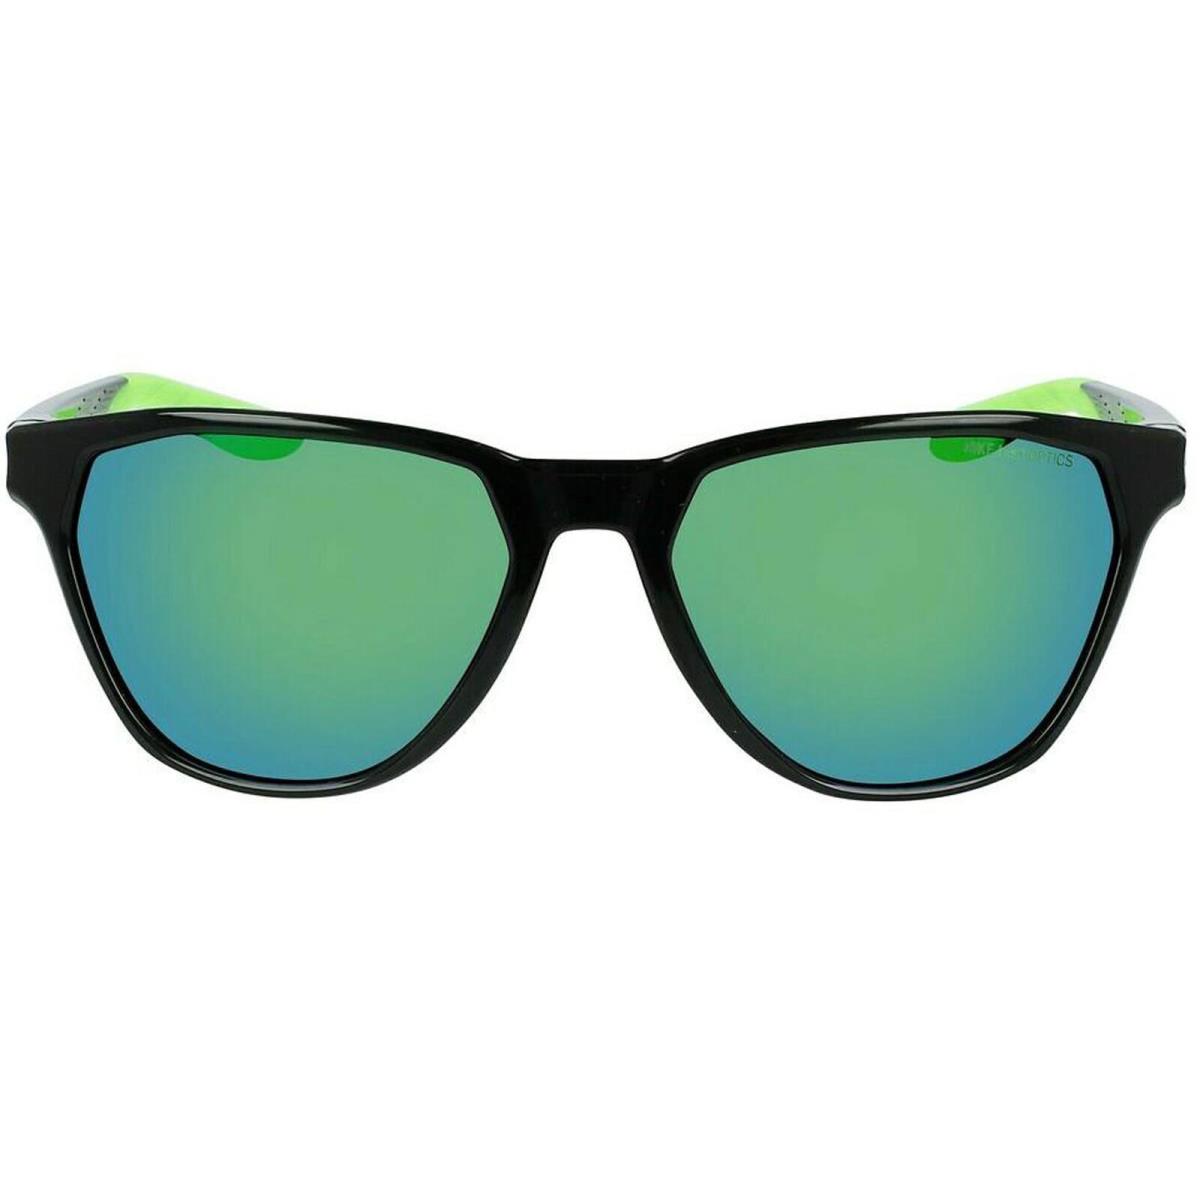 Nike Unisex Sunglasses Matte Black Max Optics Nike Maverick Rise M DQ0870 012 - Frame: Matte Black, Lens: Blue Green